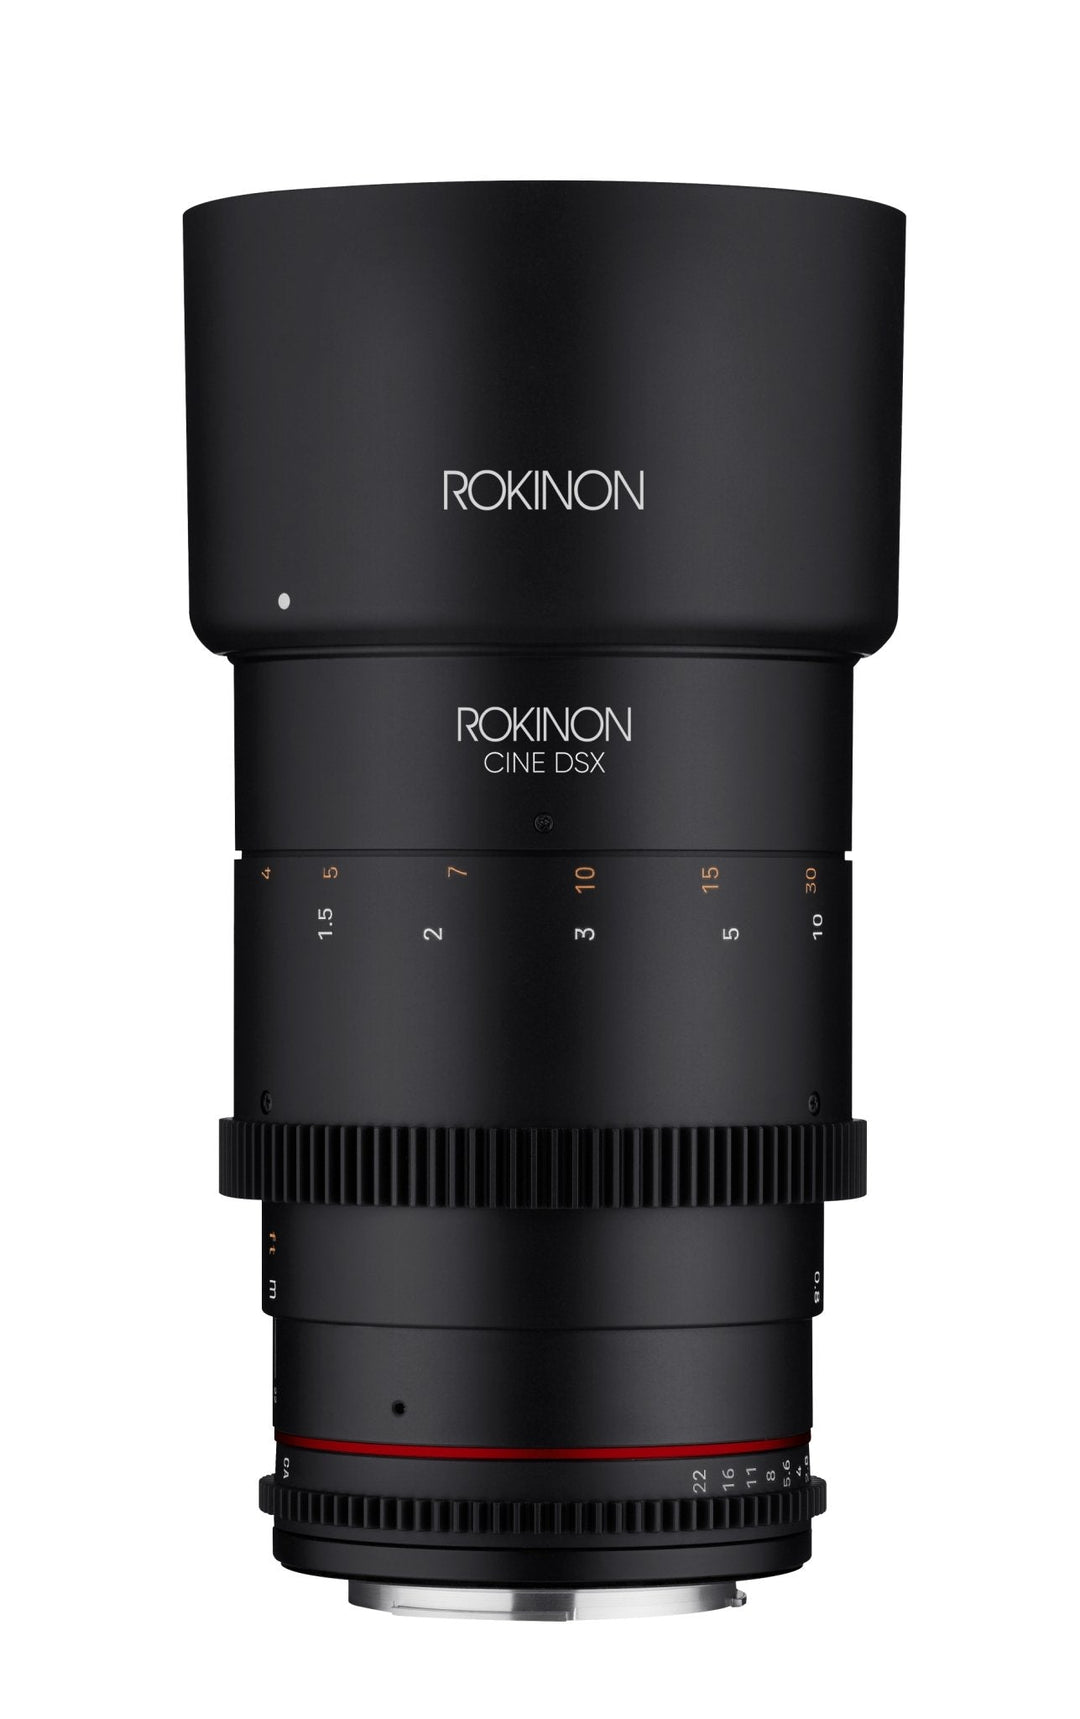 Official Strib Cine Lens Traveler Kit - Cine DSX 14, 35, 50 & 135mm - Rokinon